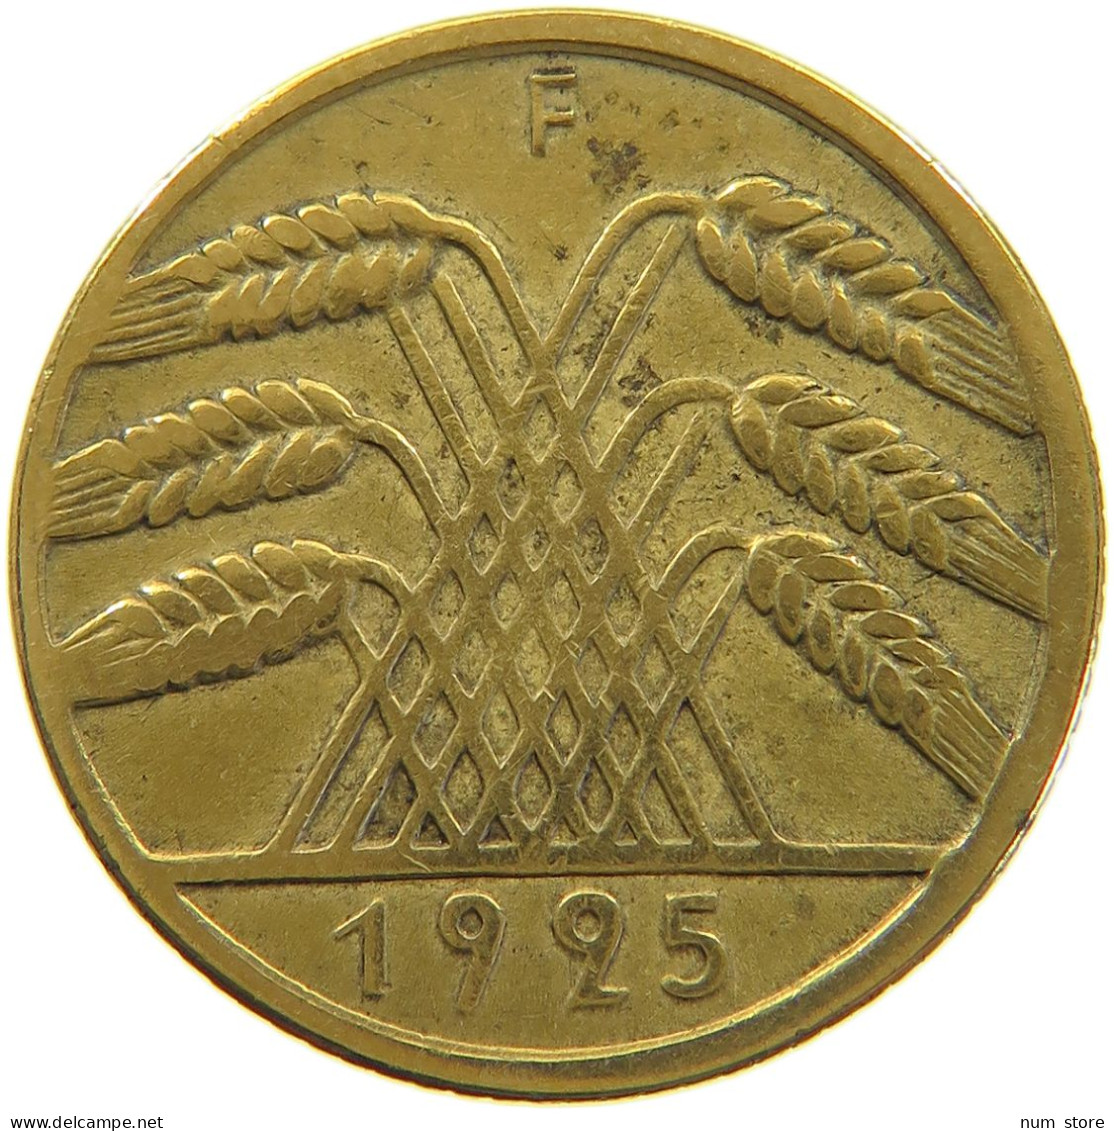 WEIMARER REPUBLIK 10 PFENNIG 1925 F PLANCHET ERROR #a074 0285 - 10 Renten- & 10 Reichspfennig